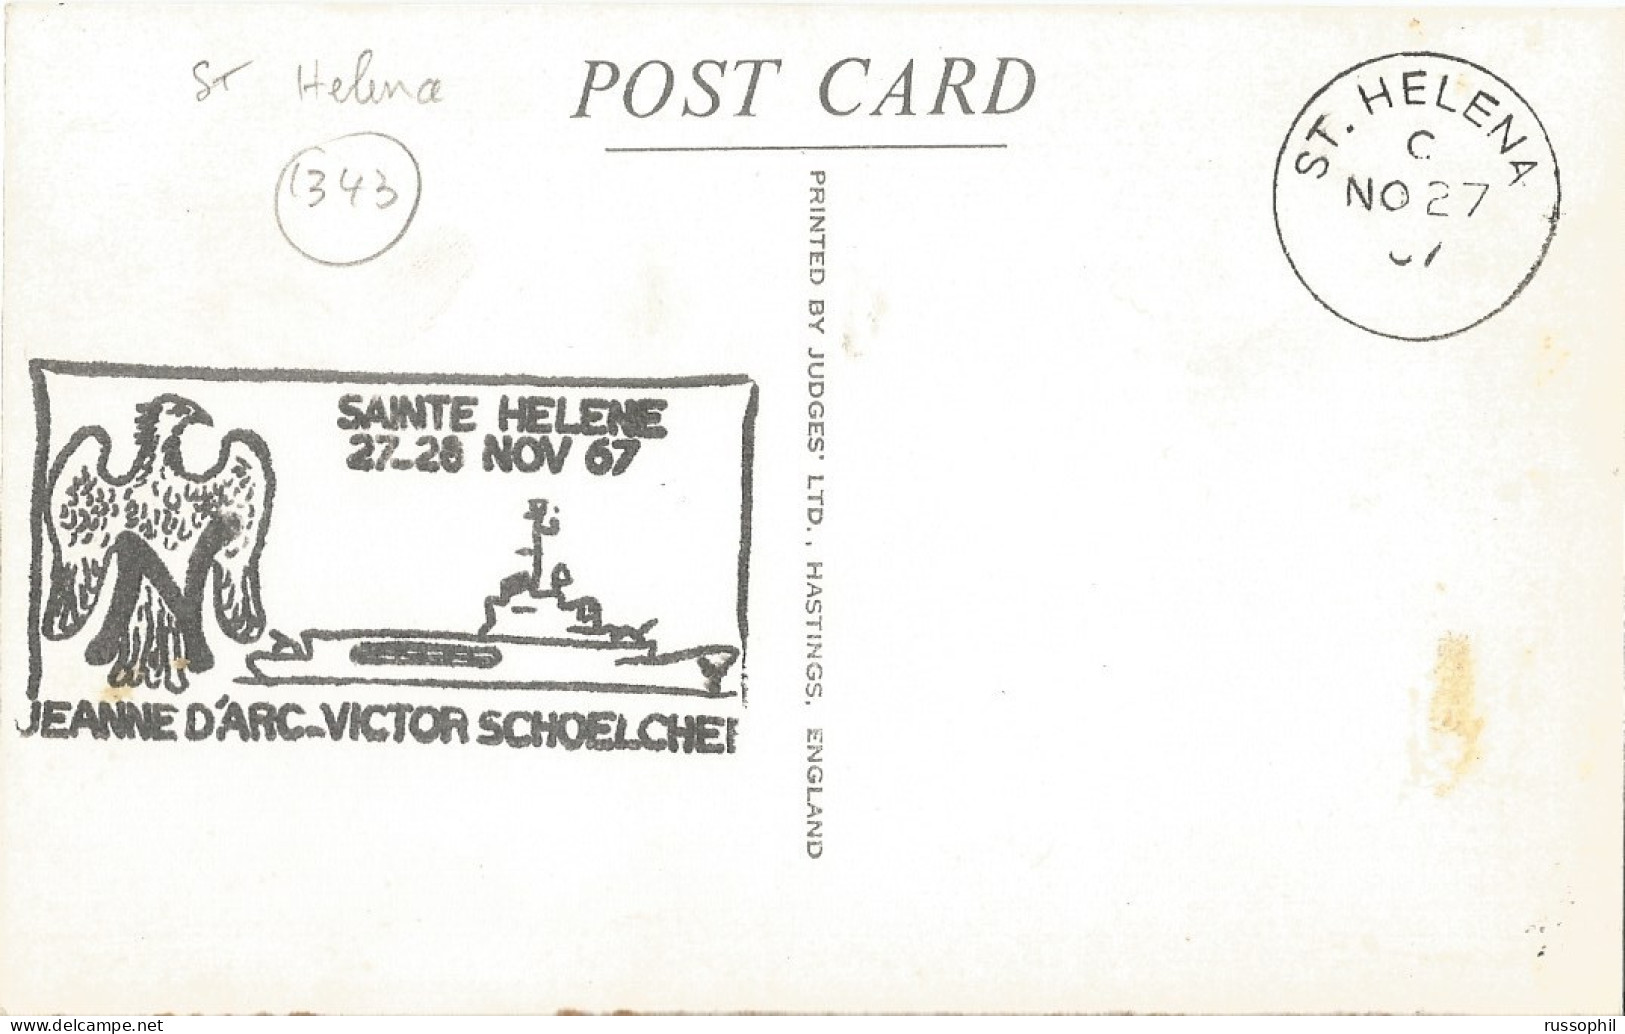 ST HELENA - JACOB'S LADDER, 699 STEPS - PUB. JUDGES LTD, HASTINGSREF REF #2  - FRENCH WAR SHIP " JEANNE D'ARC " - 1967 - Sant'Elena